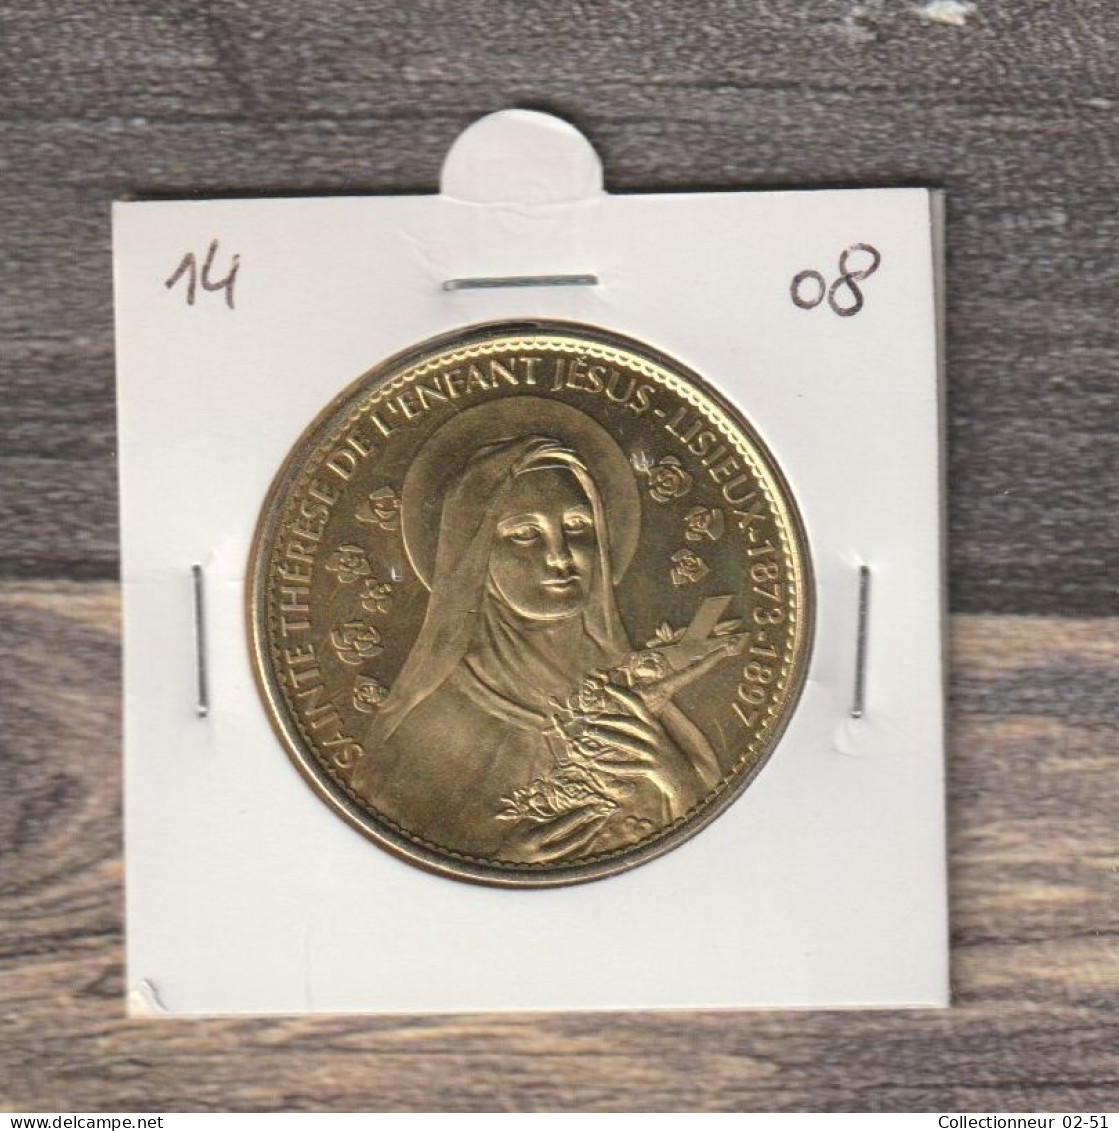 Monnaie Arthus Bertrand : Sainte Thérèse De L'enfant Jésus Lisieux 1873-1897 - 2008 - 2008